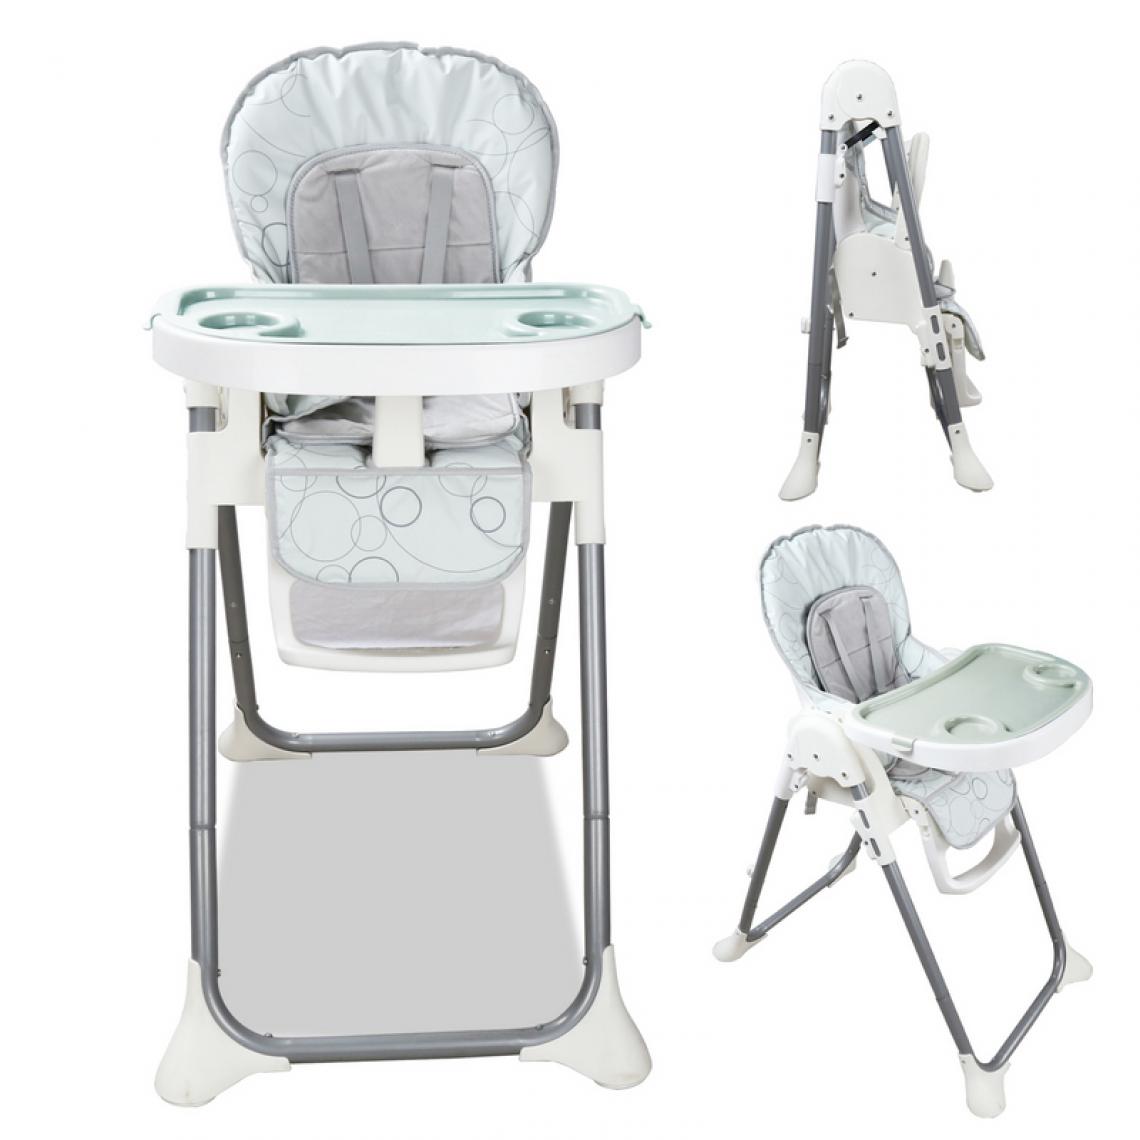 Einfeben - Chaise haute bébé, enfant pliable, réglable hauteur, dossier et tablette - gris - Chaises